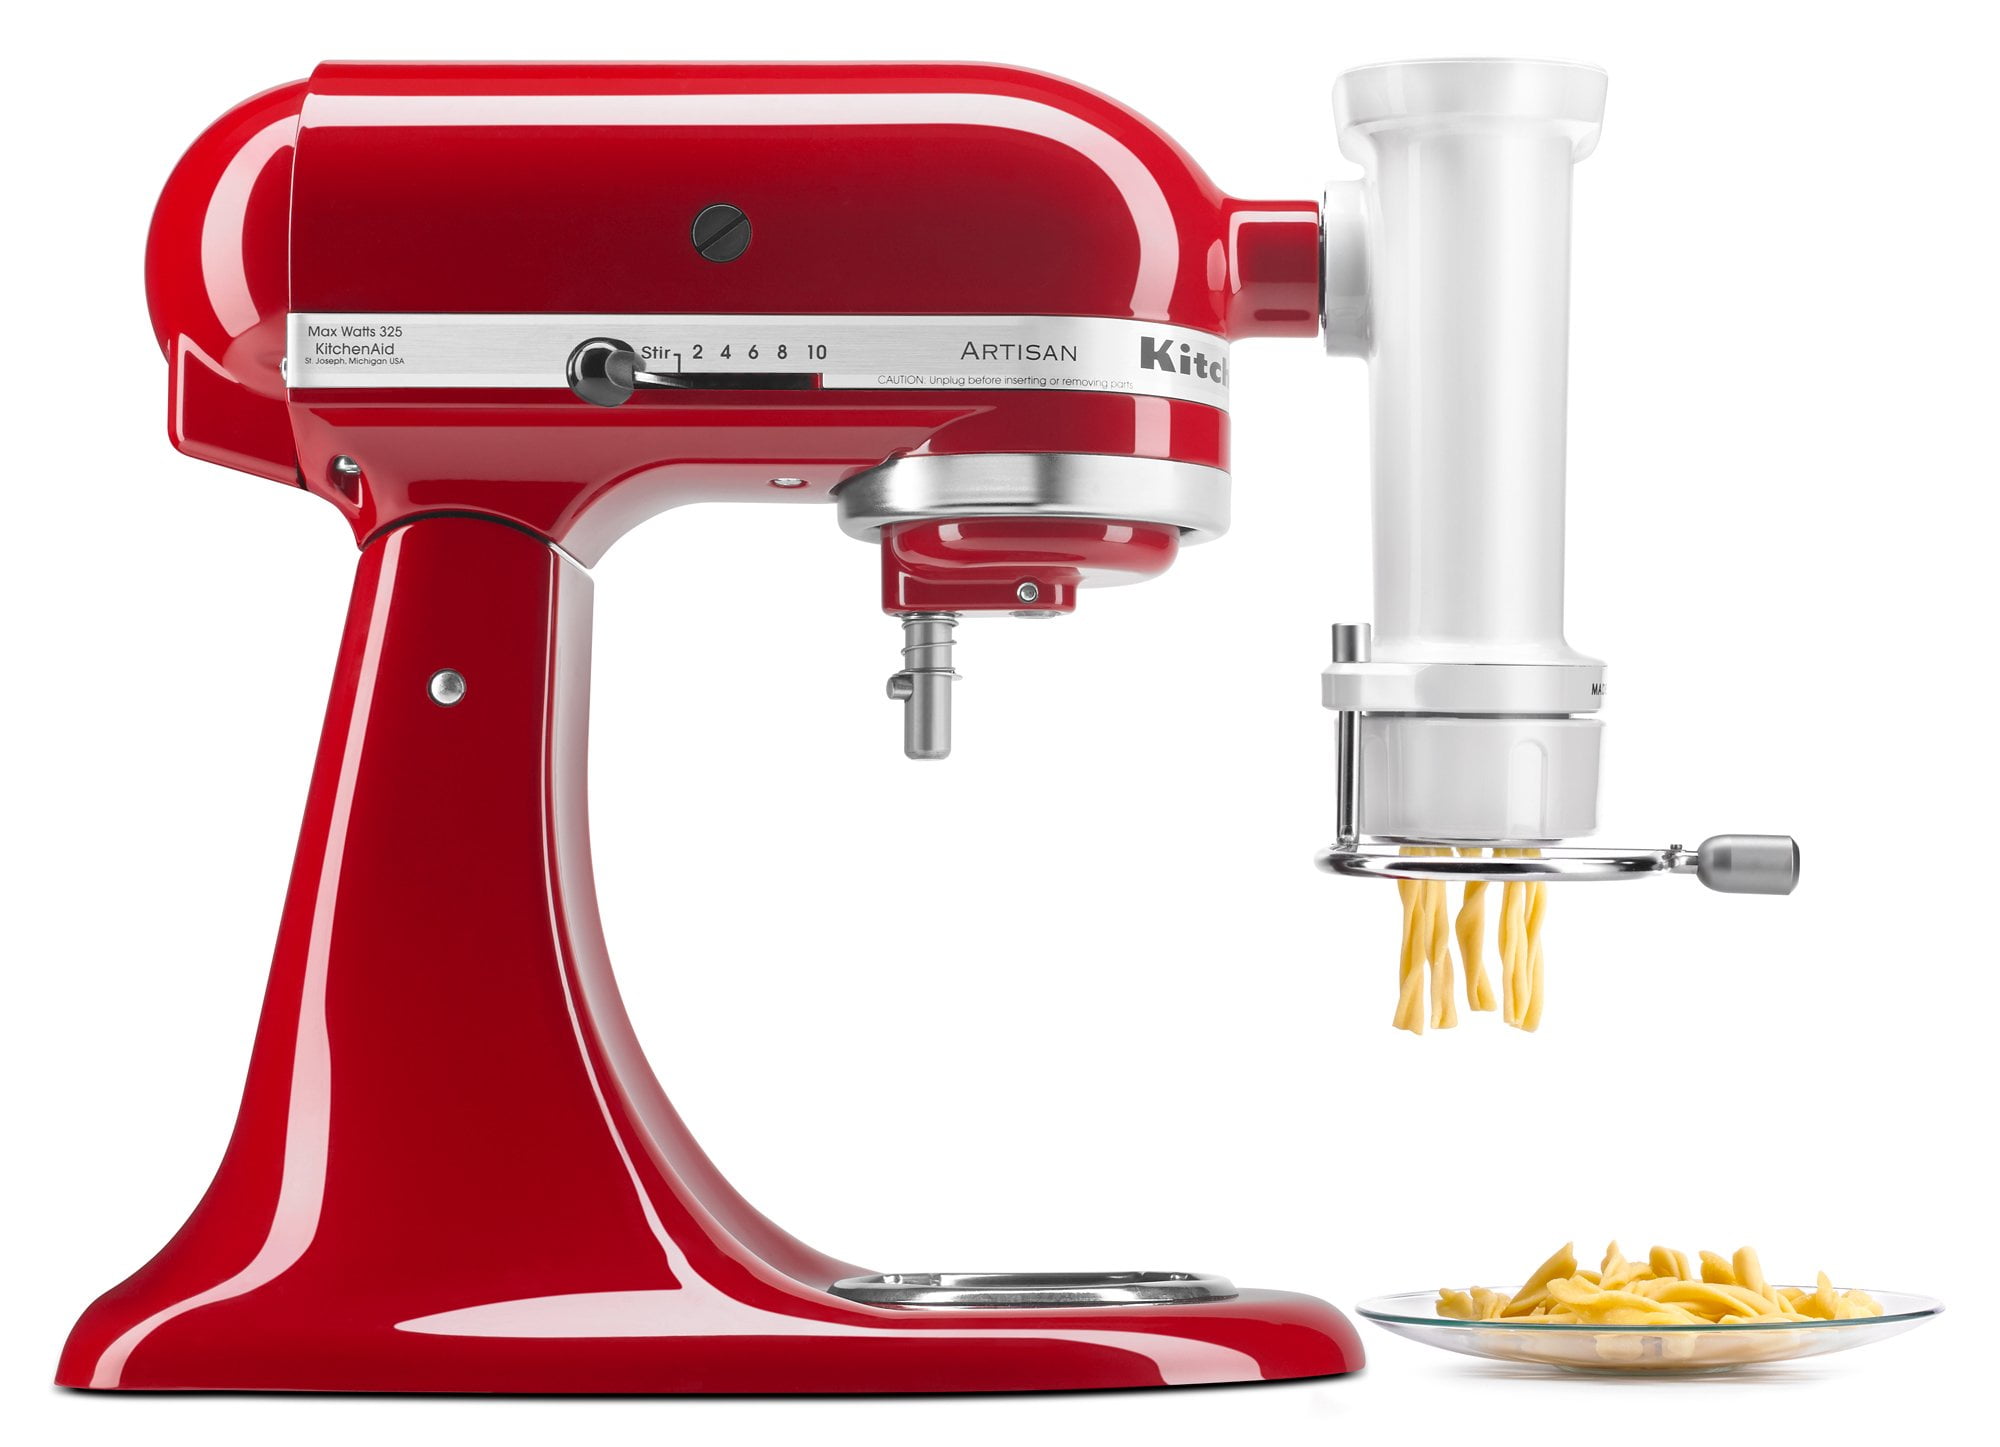  Pasta Attachment for KitchenAid Mixer, Includes Pasta Sheet  Roller, Spaghetti Fettuccine Cutter, 3Pcs for Pasta Attachment by HOZODO :  Home & Kitchen